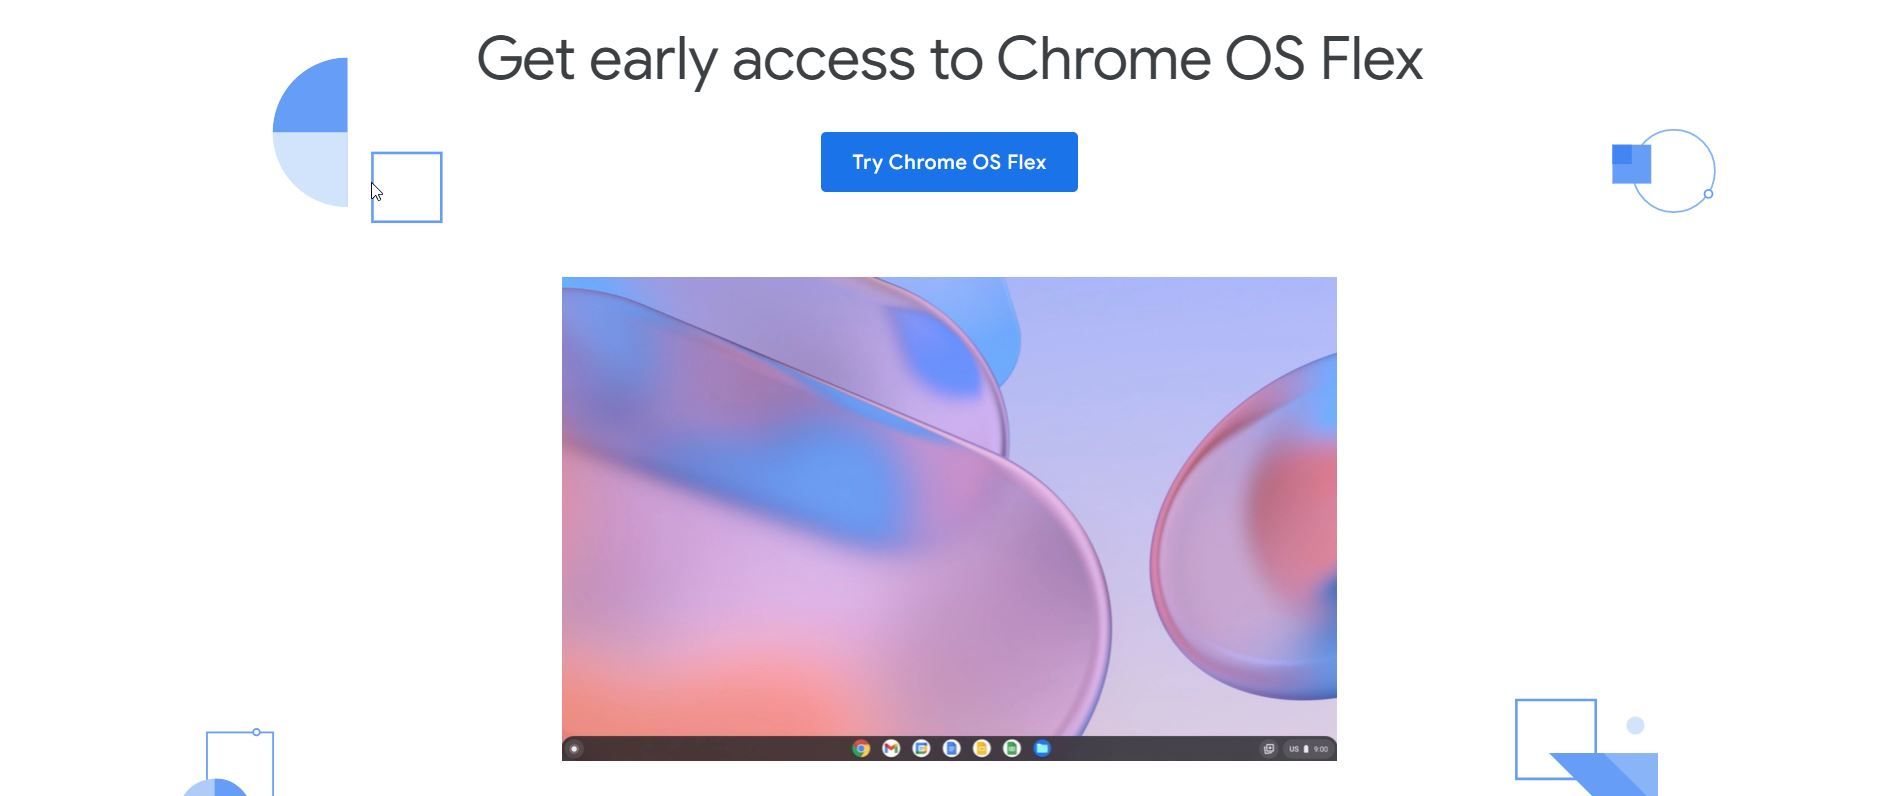 Chrome OS Flex website